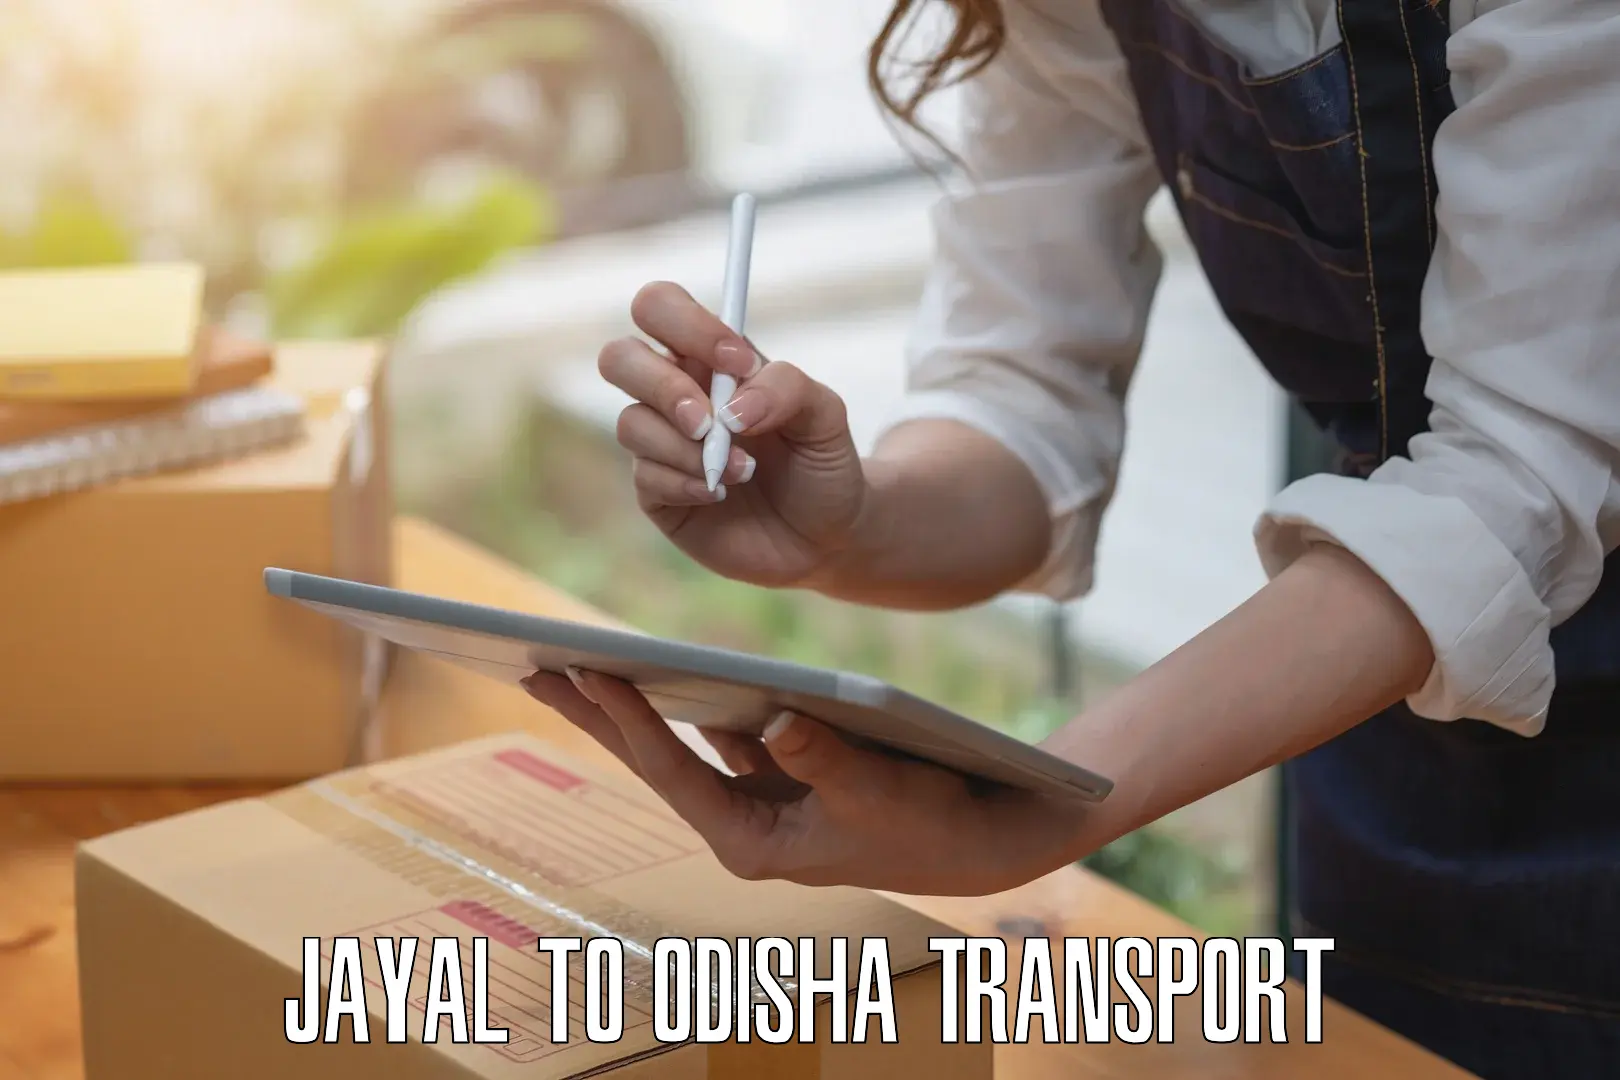 Vehicle transport services Jayal to Kesinga